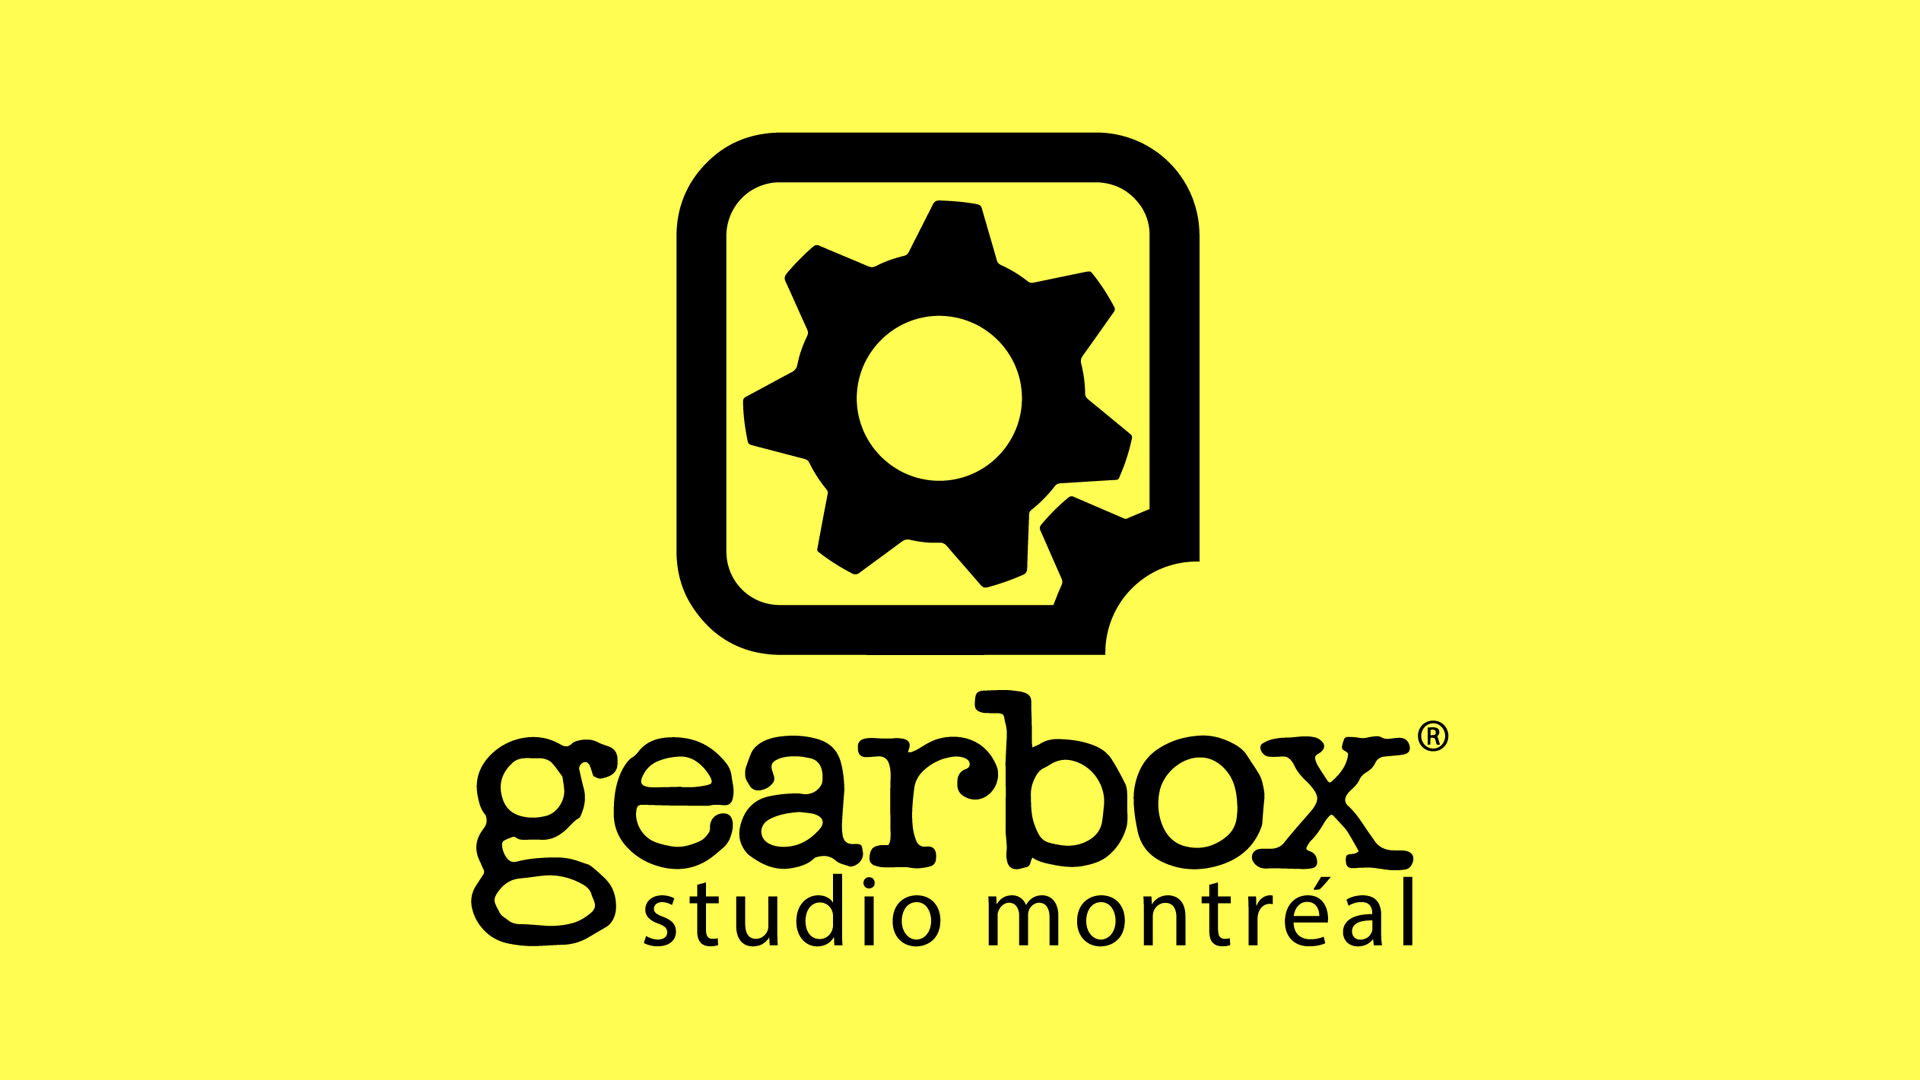 Pouaka Pouaka Studio Montreal 08 26 21 1